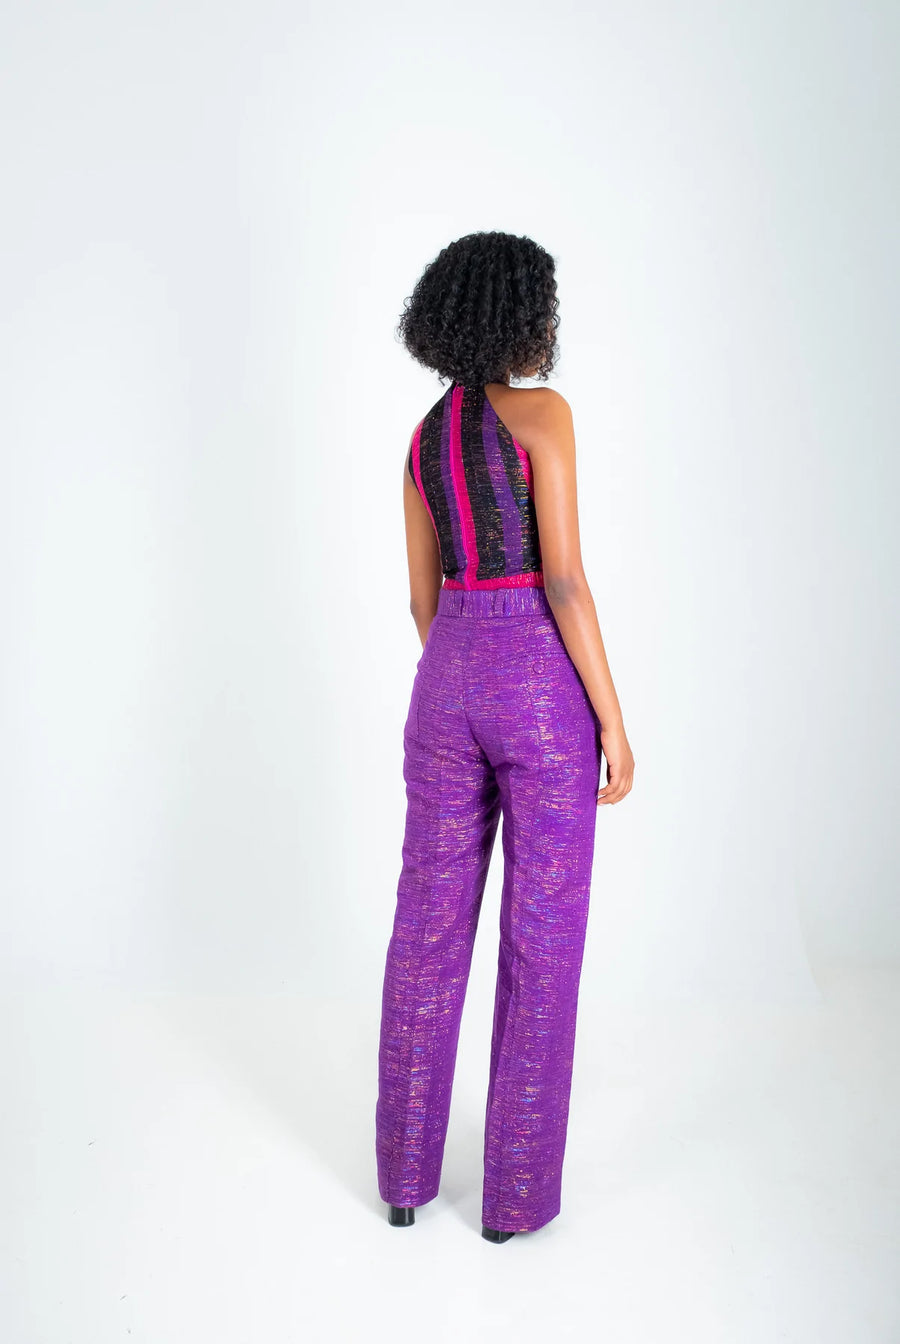 Djedje I Tailor Fitted Flare Cut Pant - Purple